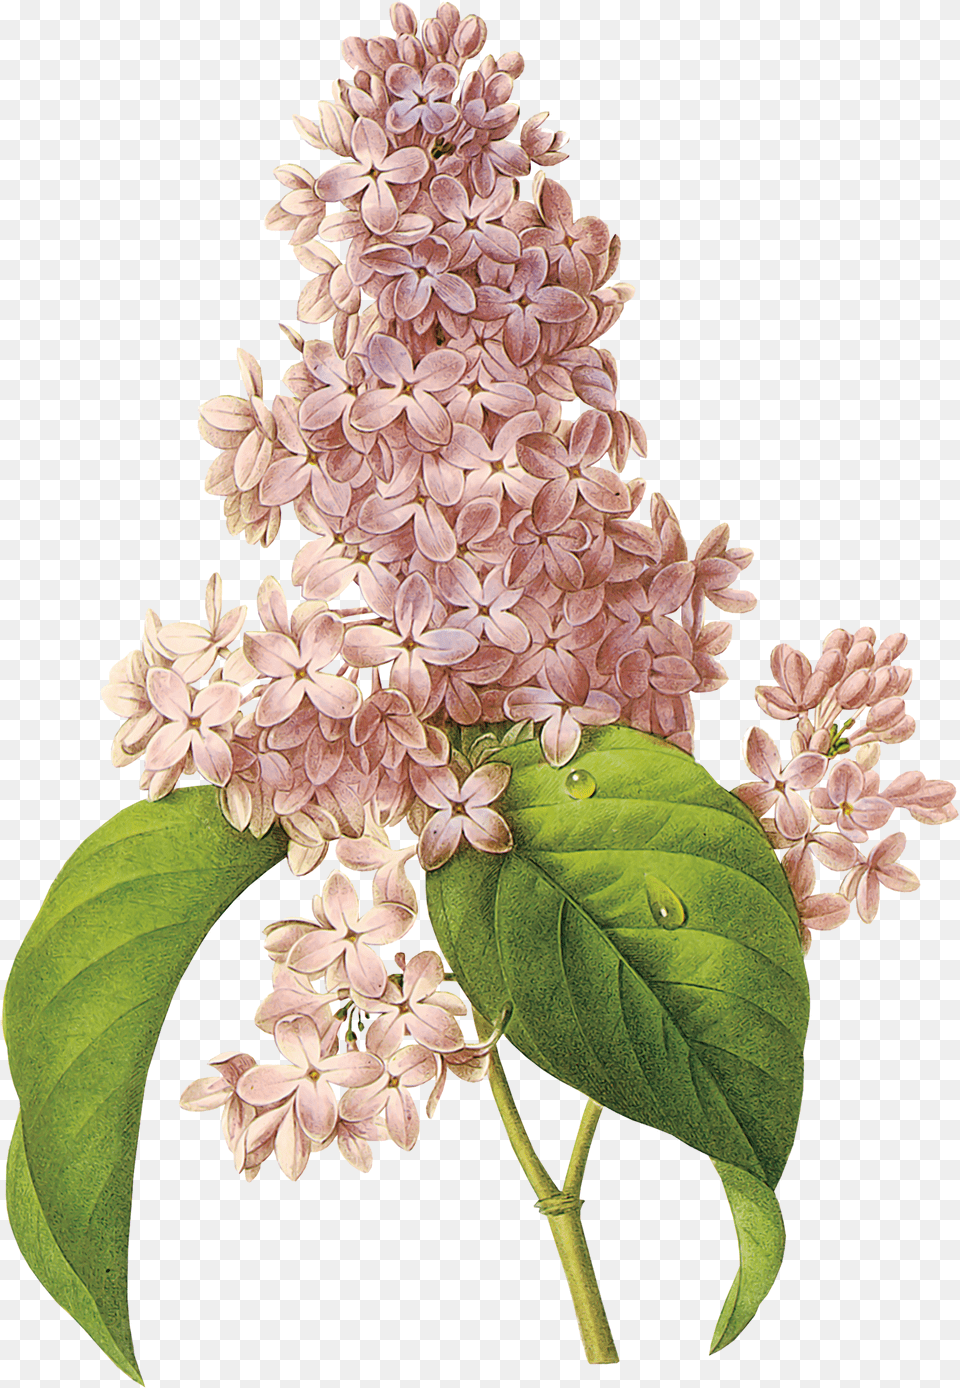 Lilac Flores De Colores Que Parecen De Algodon, Flower, Plant Png Image